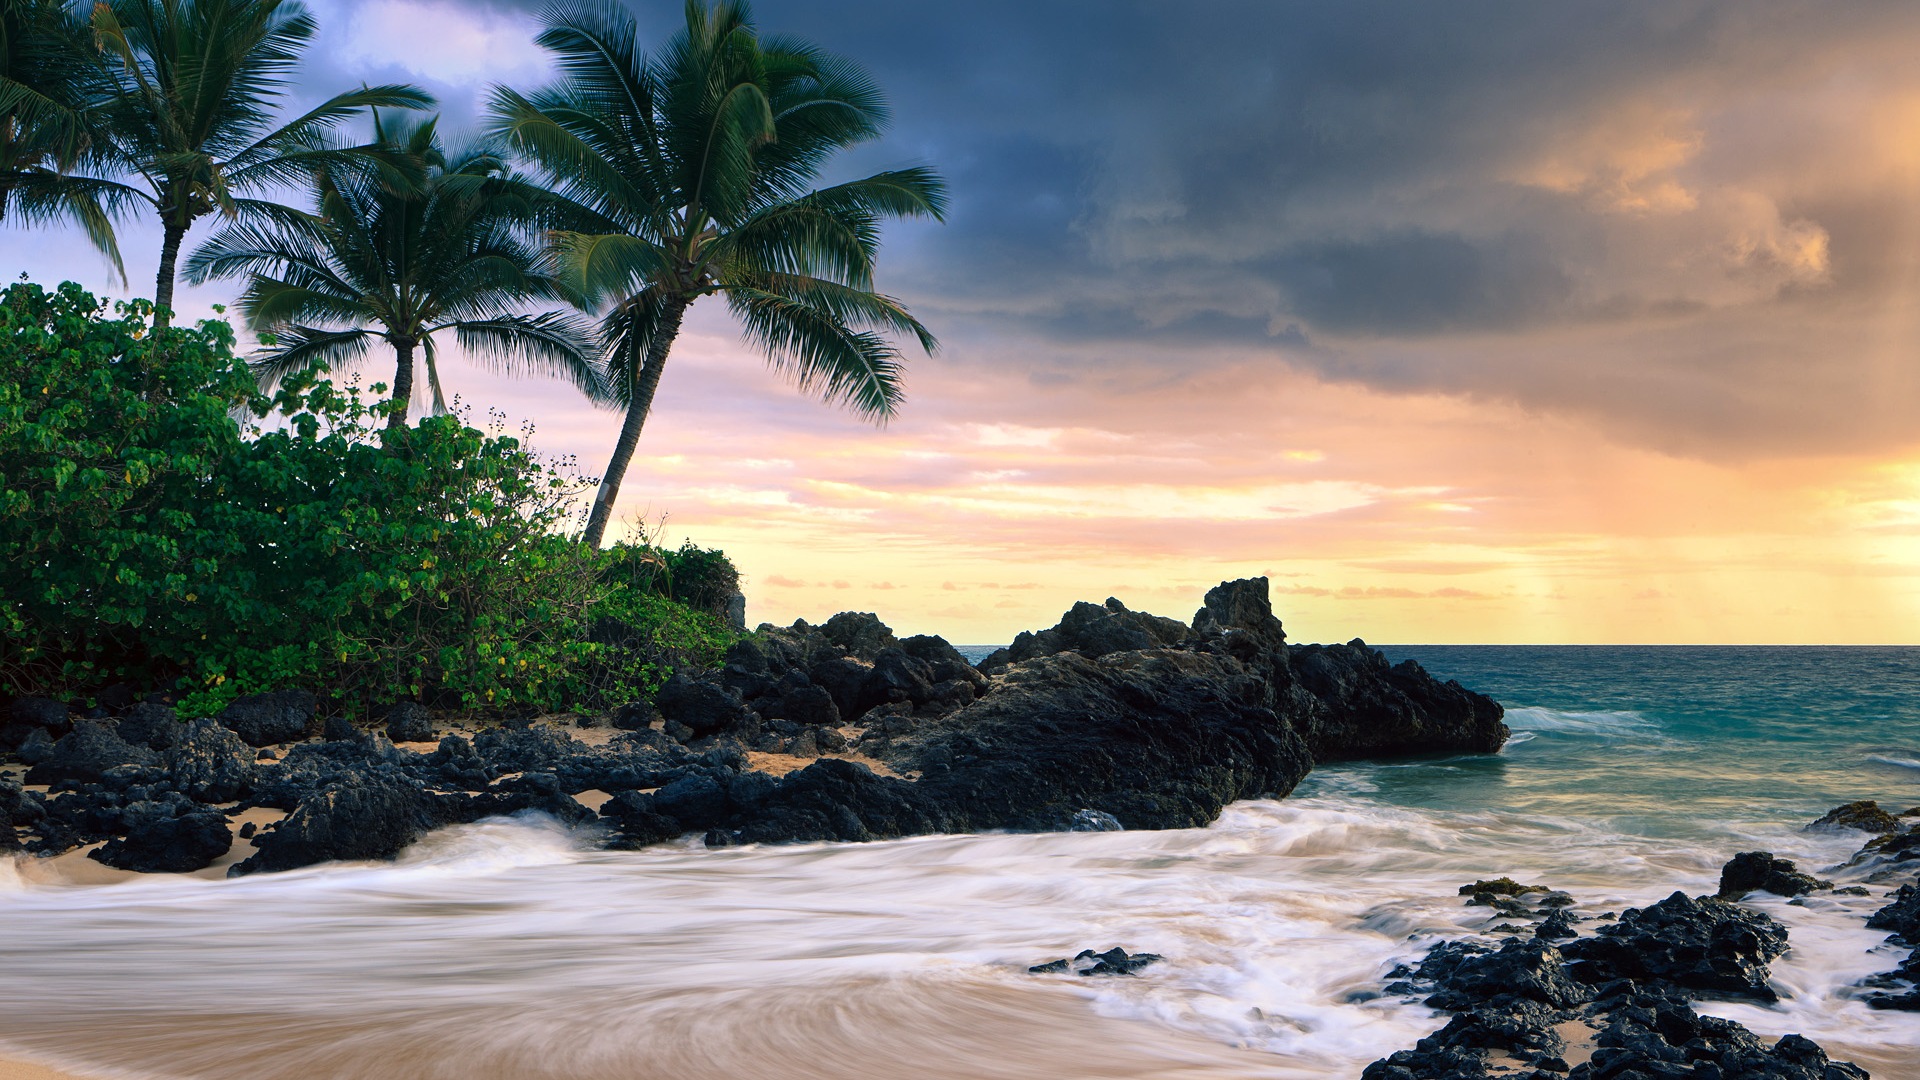 Windows 8 Theme Wallpaper: Hawaiian Landschaft #11 - 1920x1080